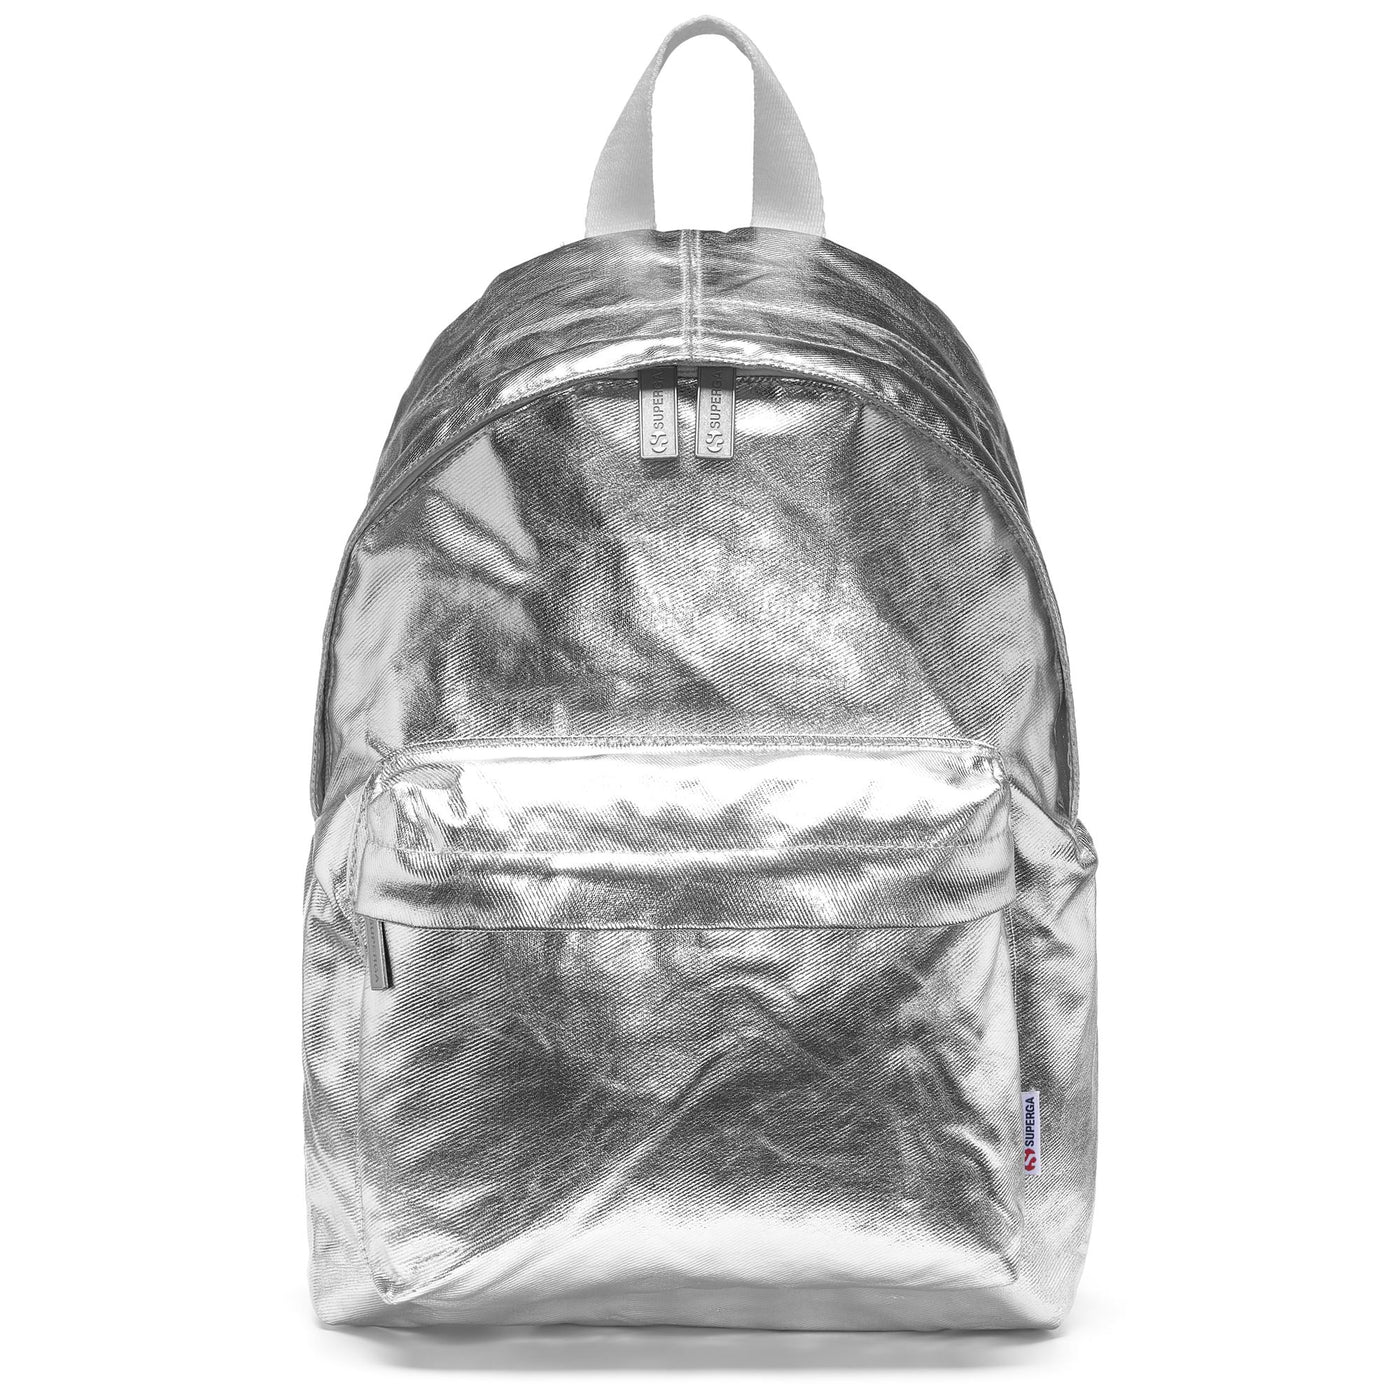 Bags Woman MINI BACKPACK METALLIC Backpack GREY SILVER Photo (jpg Rgb)			